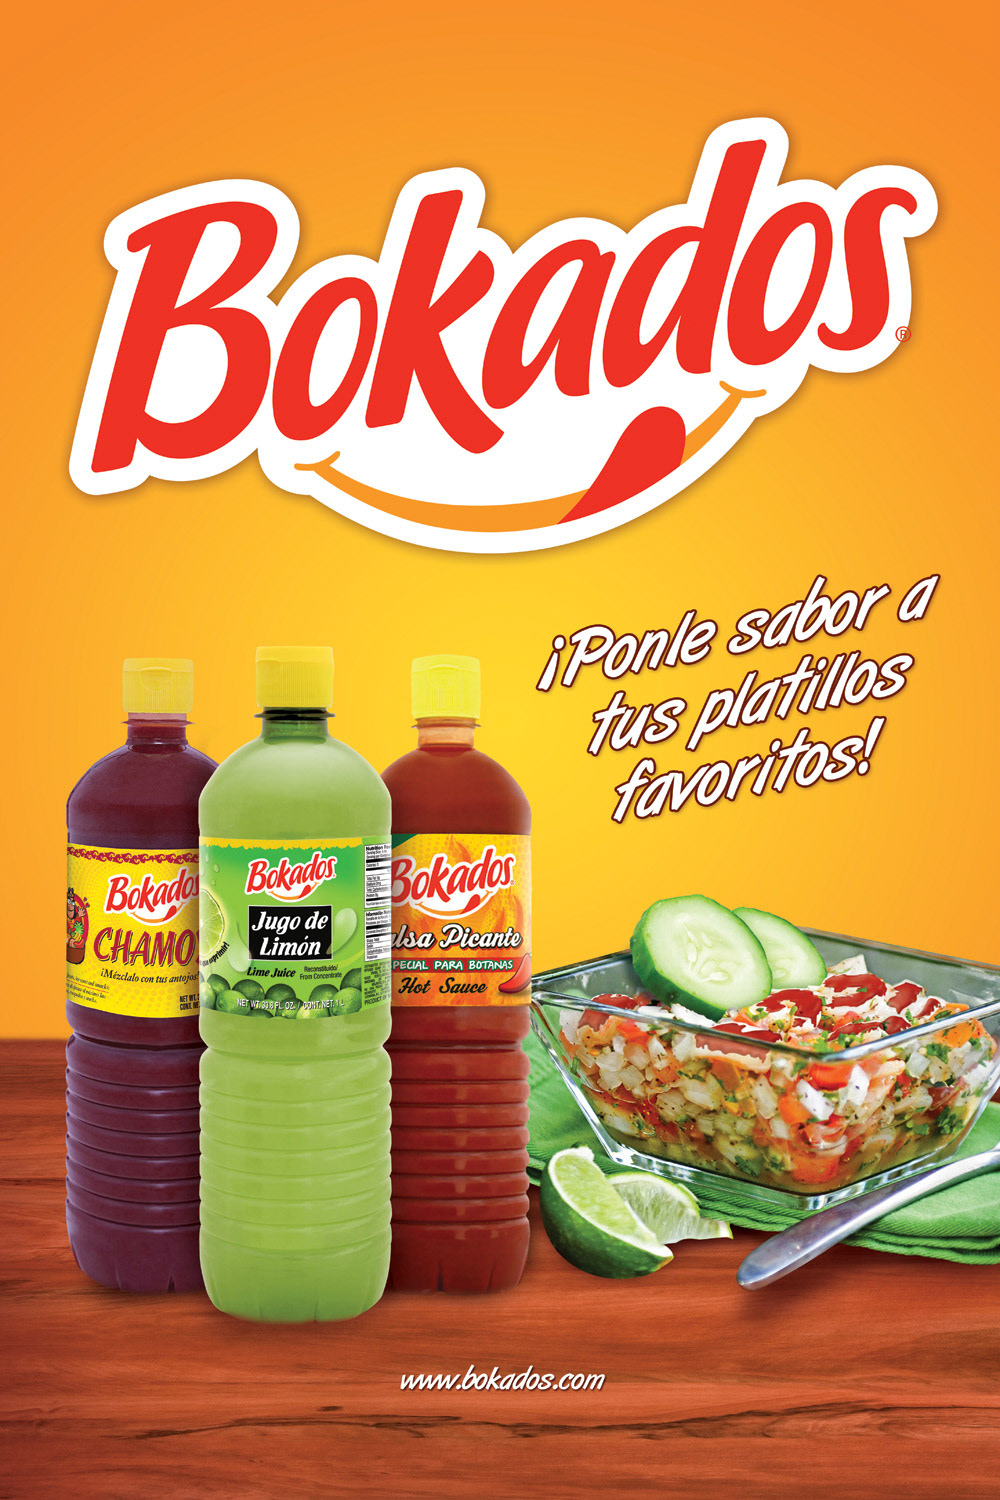 Bokados Boka2 diseño diseño gráfico publicidad